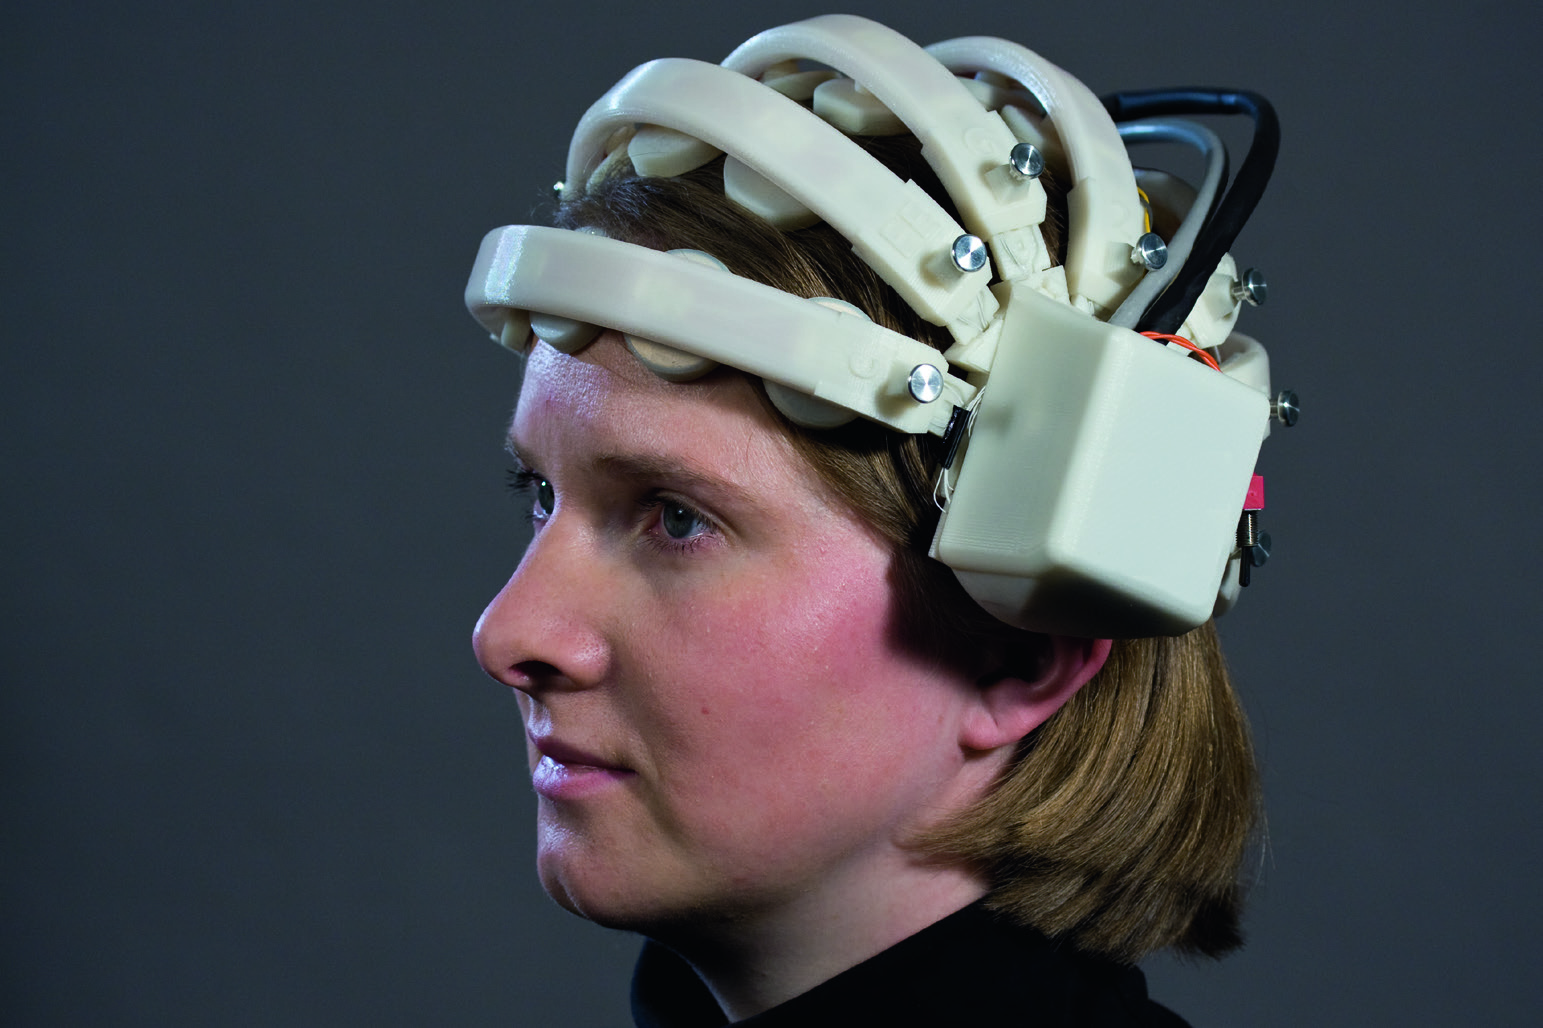 PRESSE MITTEILUNG Juni 2013 EEG leicht gemacht An der Technischen Universität Braunschweig wird ein leichter Elektroden-Helm gebaut und eingesetzt, der die Diagnostik durch mobile drahtlose